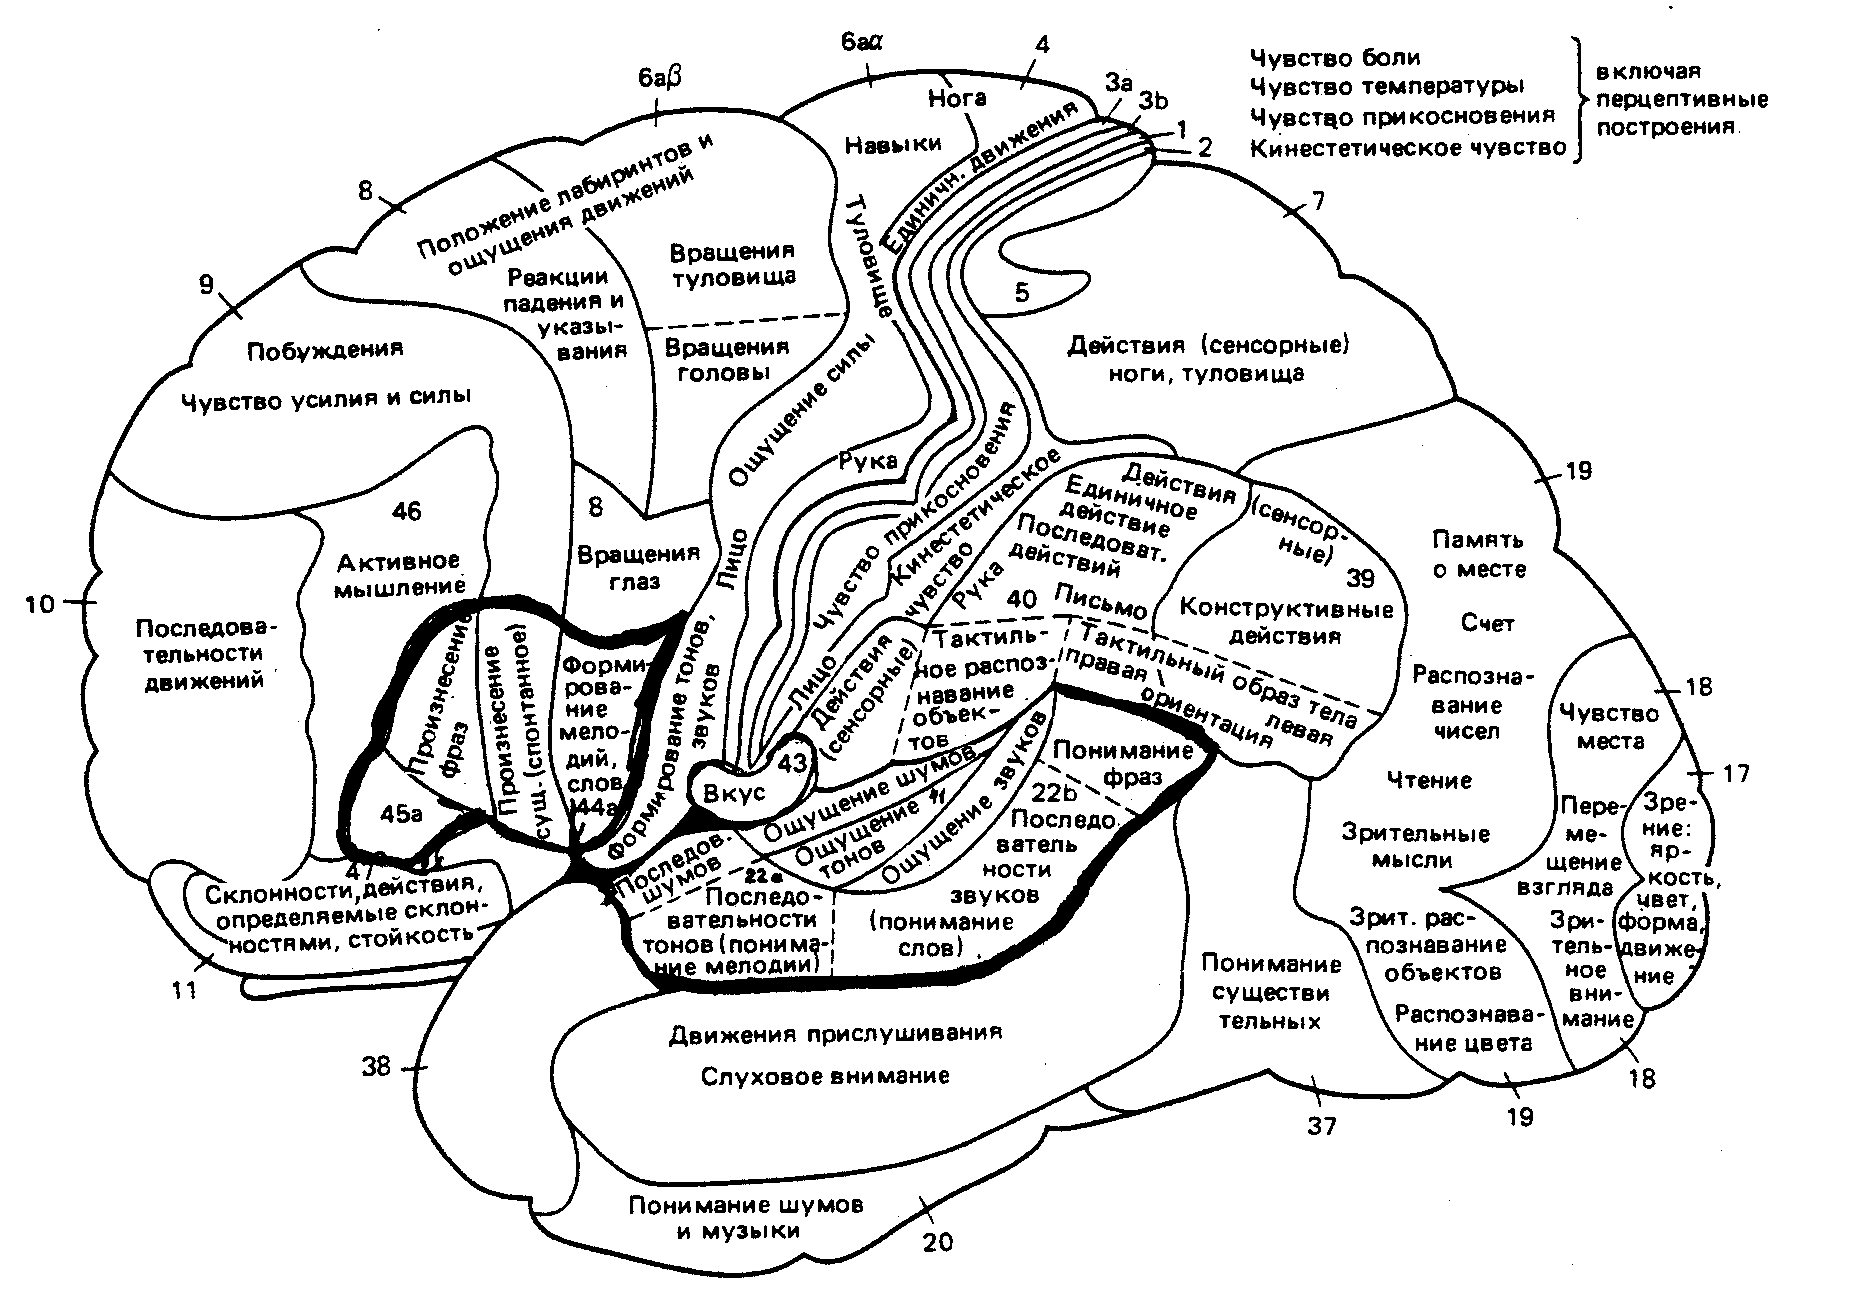 Функциональные зоны мозга. Карта полушарий мозга поля по Бродману. Карта локализации функций в коре головного мозга по Бродману. Карта полей головного мозга по Бродману. Карта цитоархитектонических полей коры головного мозга Бродмана.